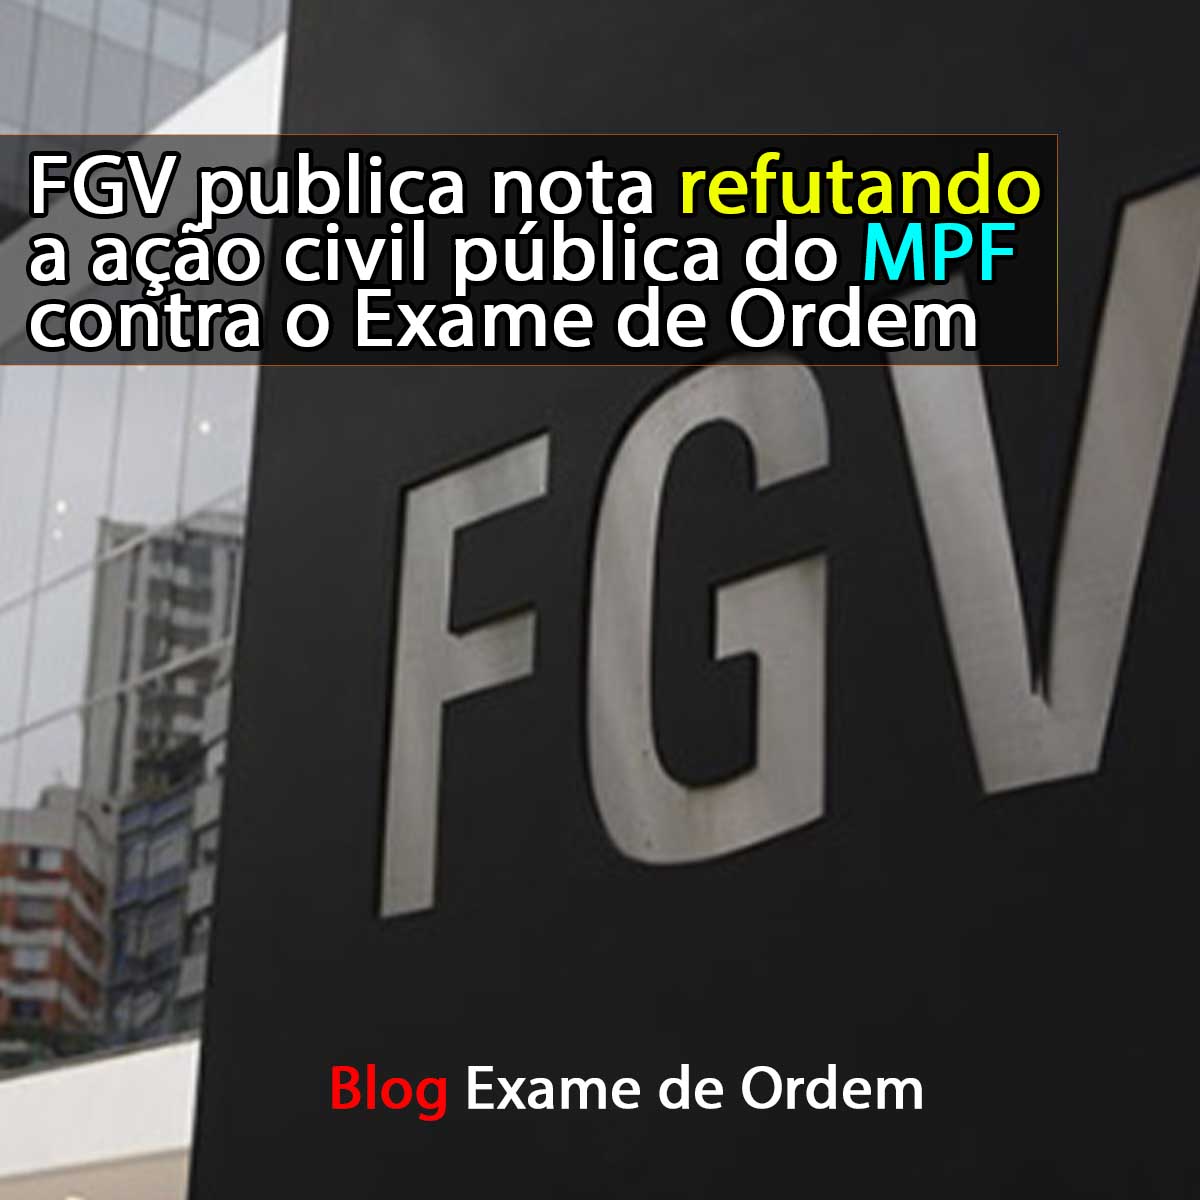 FGV publica nota refutando a ação civil pública do MPF contra o Exame de Ordem